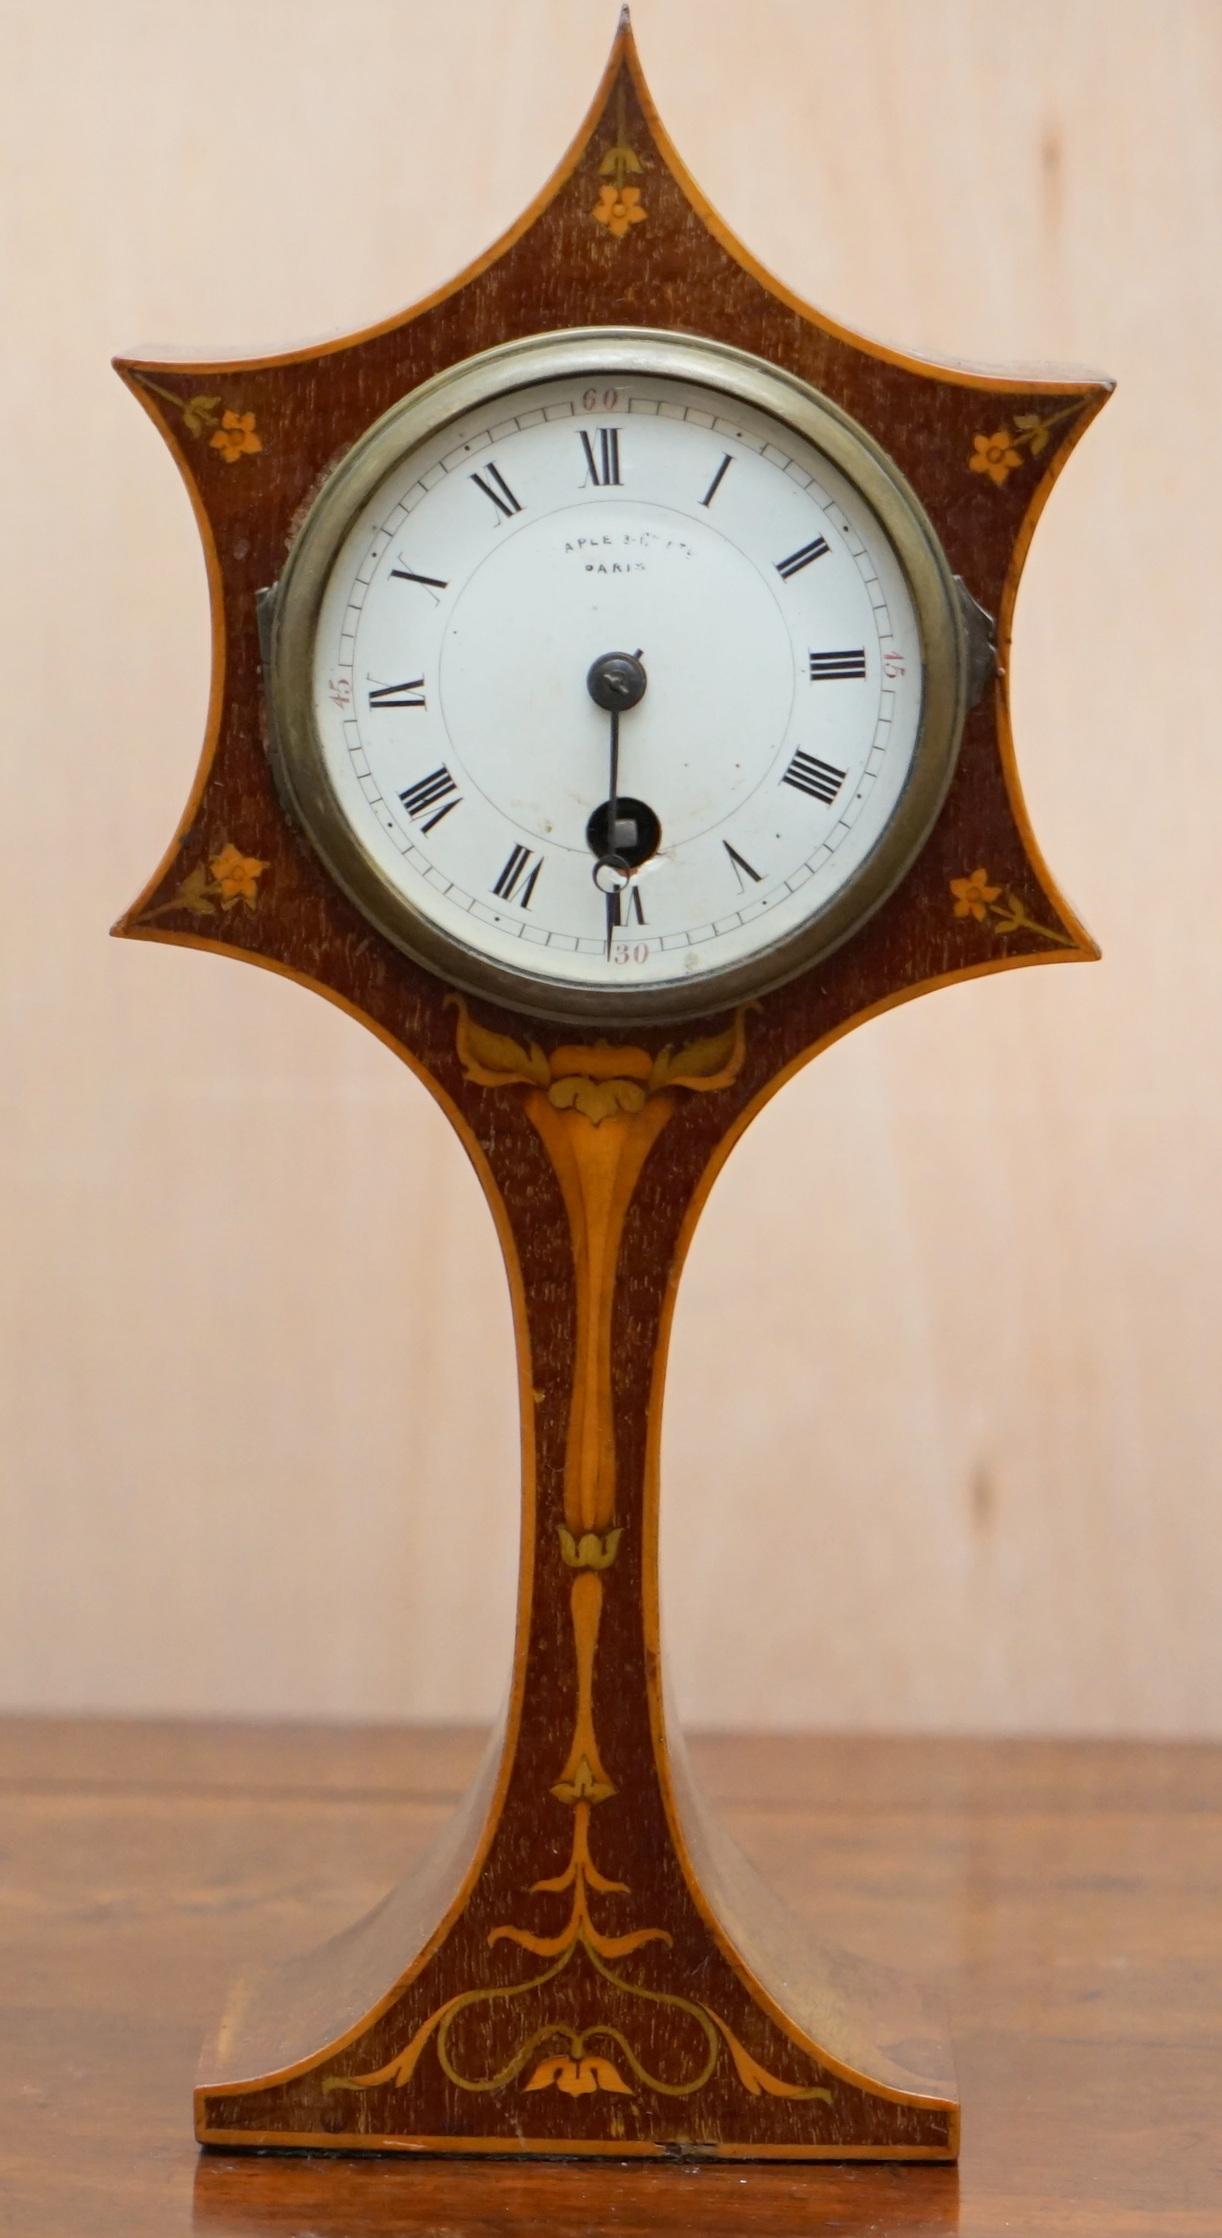 Wimbledon-Furniture

Wimbledon-Furniture a le plaisir de proposer à la vente cette ravissante horloge de cheminée en acajou marqueté Maple & Co Art Nouveau, datant de 1890

Une très belle pièce décorative, la marqueterie est particulièrement